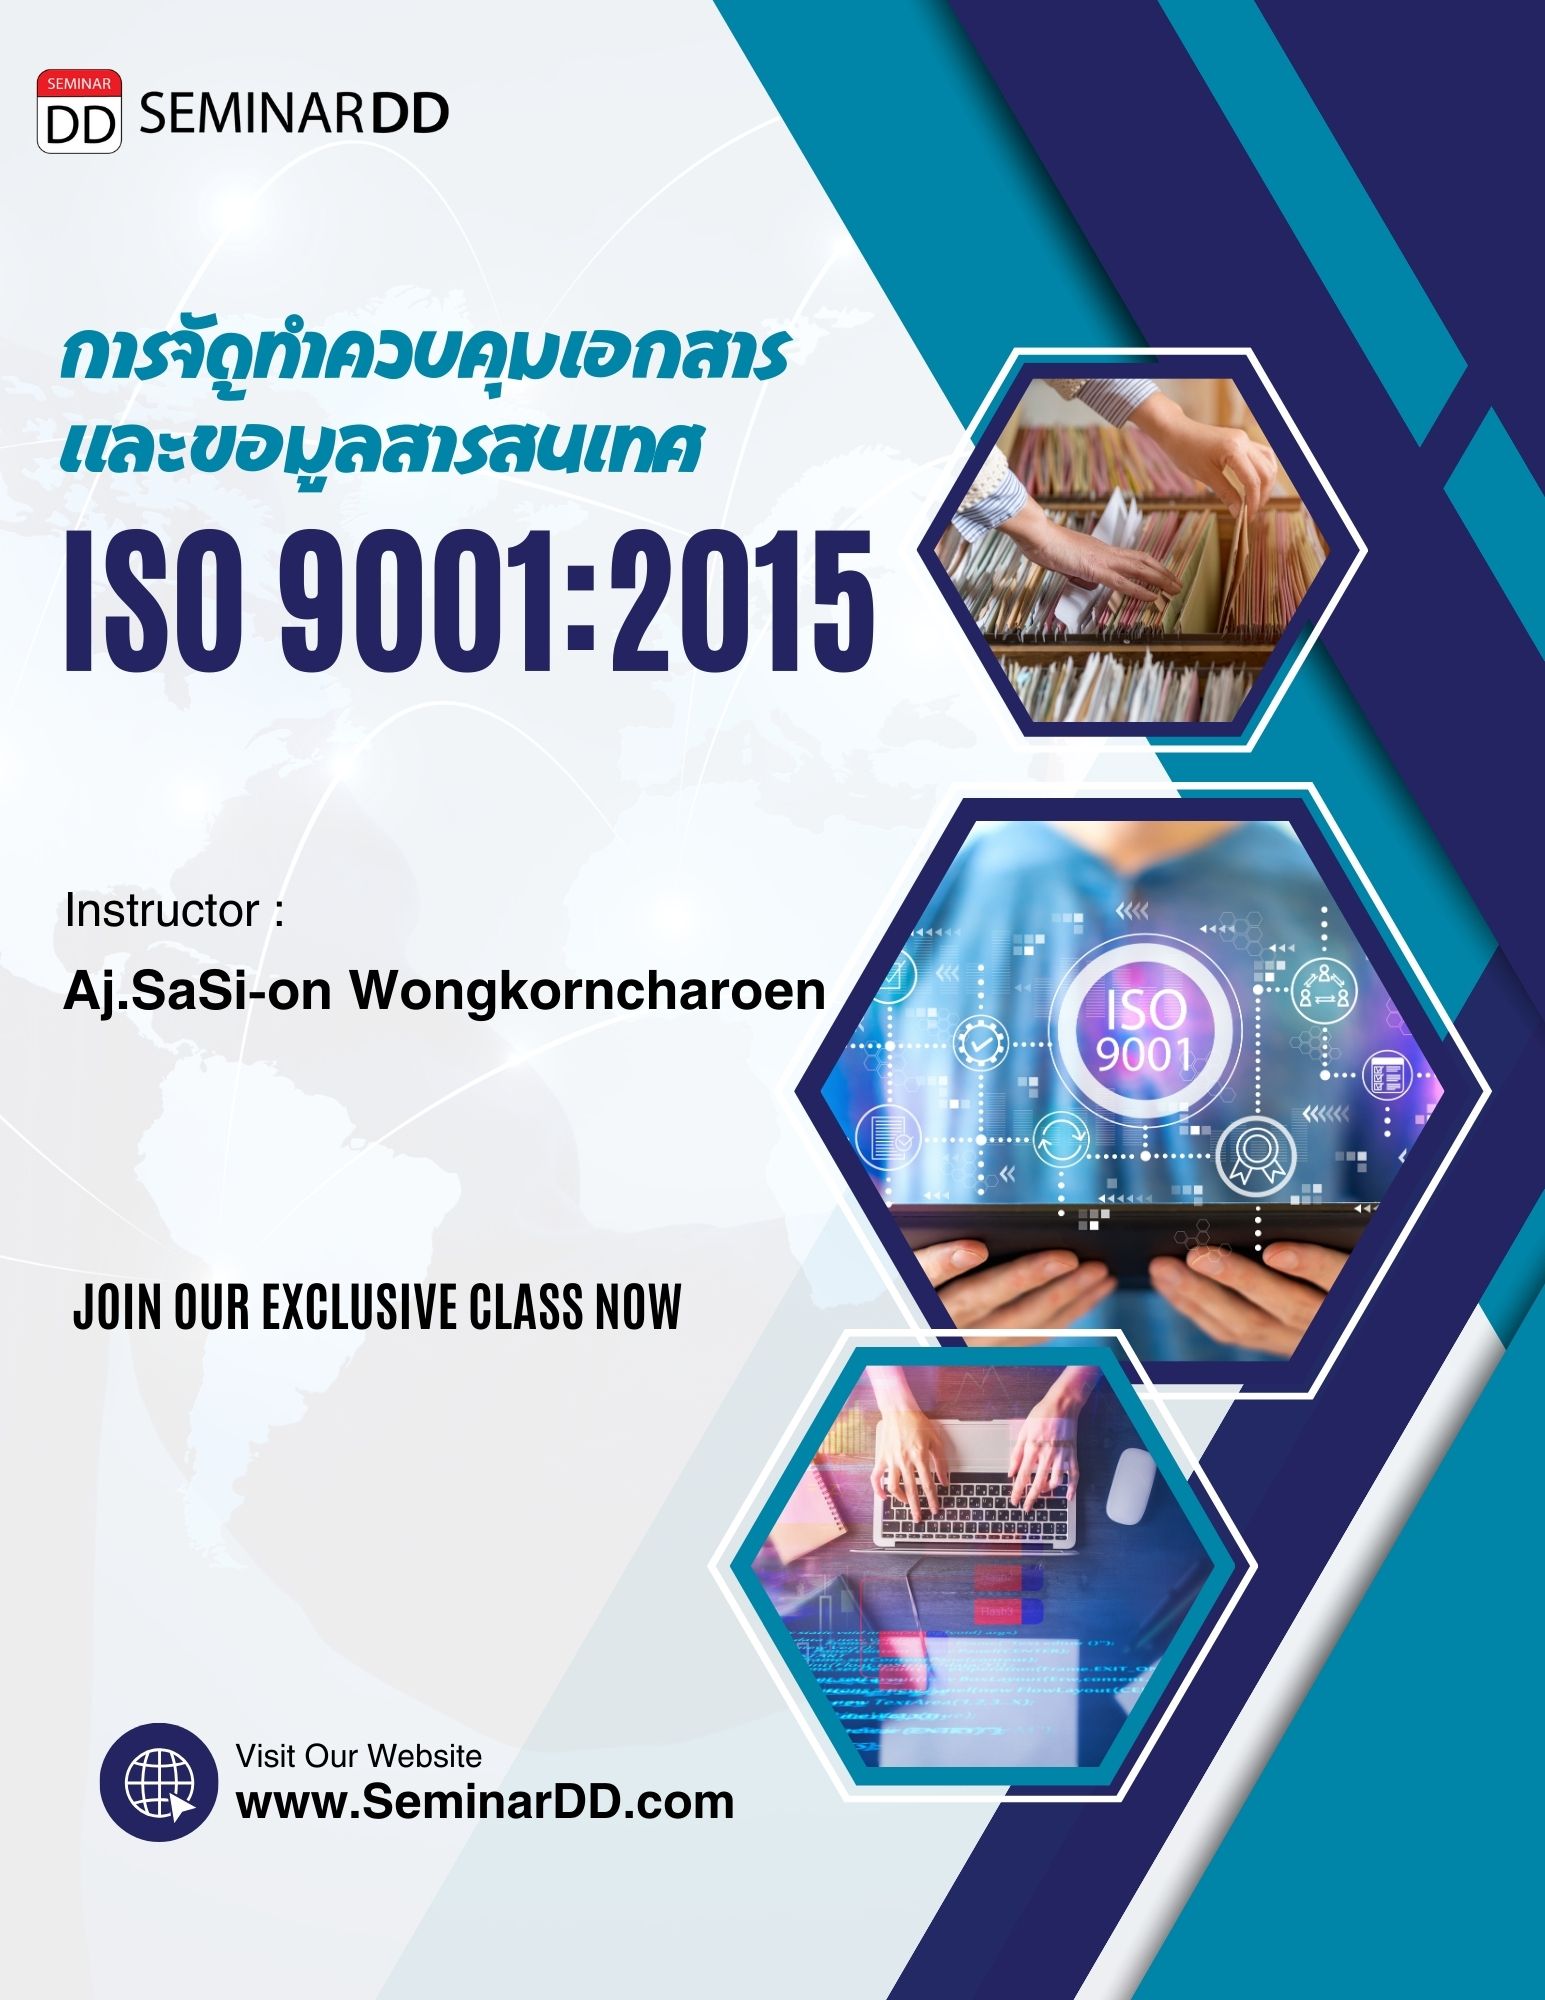 หลักสูตร การจัดทำ ควบคุมเอกสารและข้อมูลสารสนเทศ ตามระบบ ISO 9001:2015